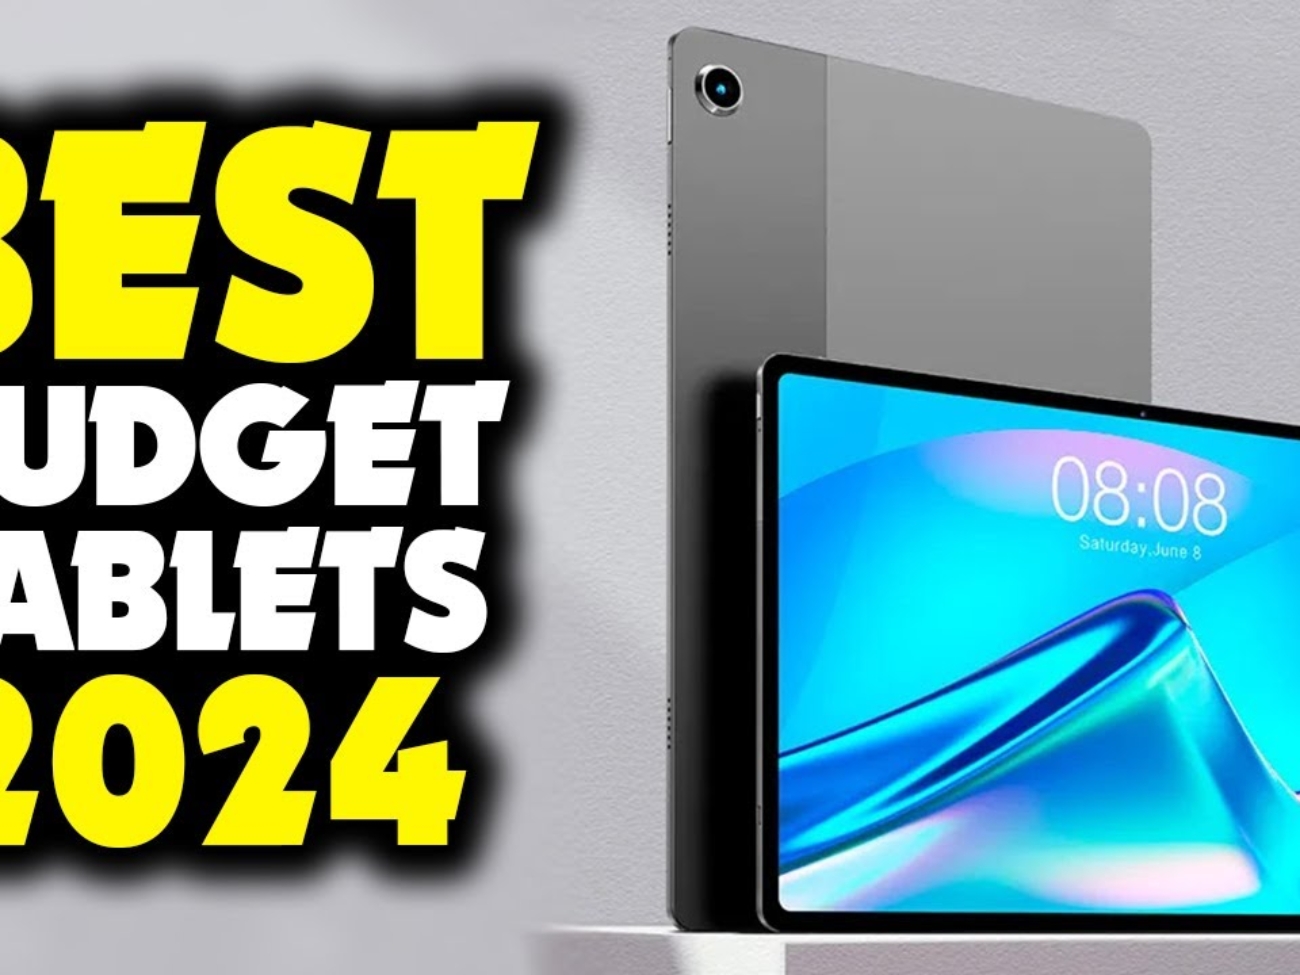 Best Budget Tablet 2024